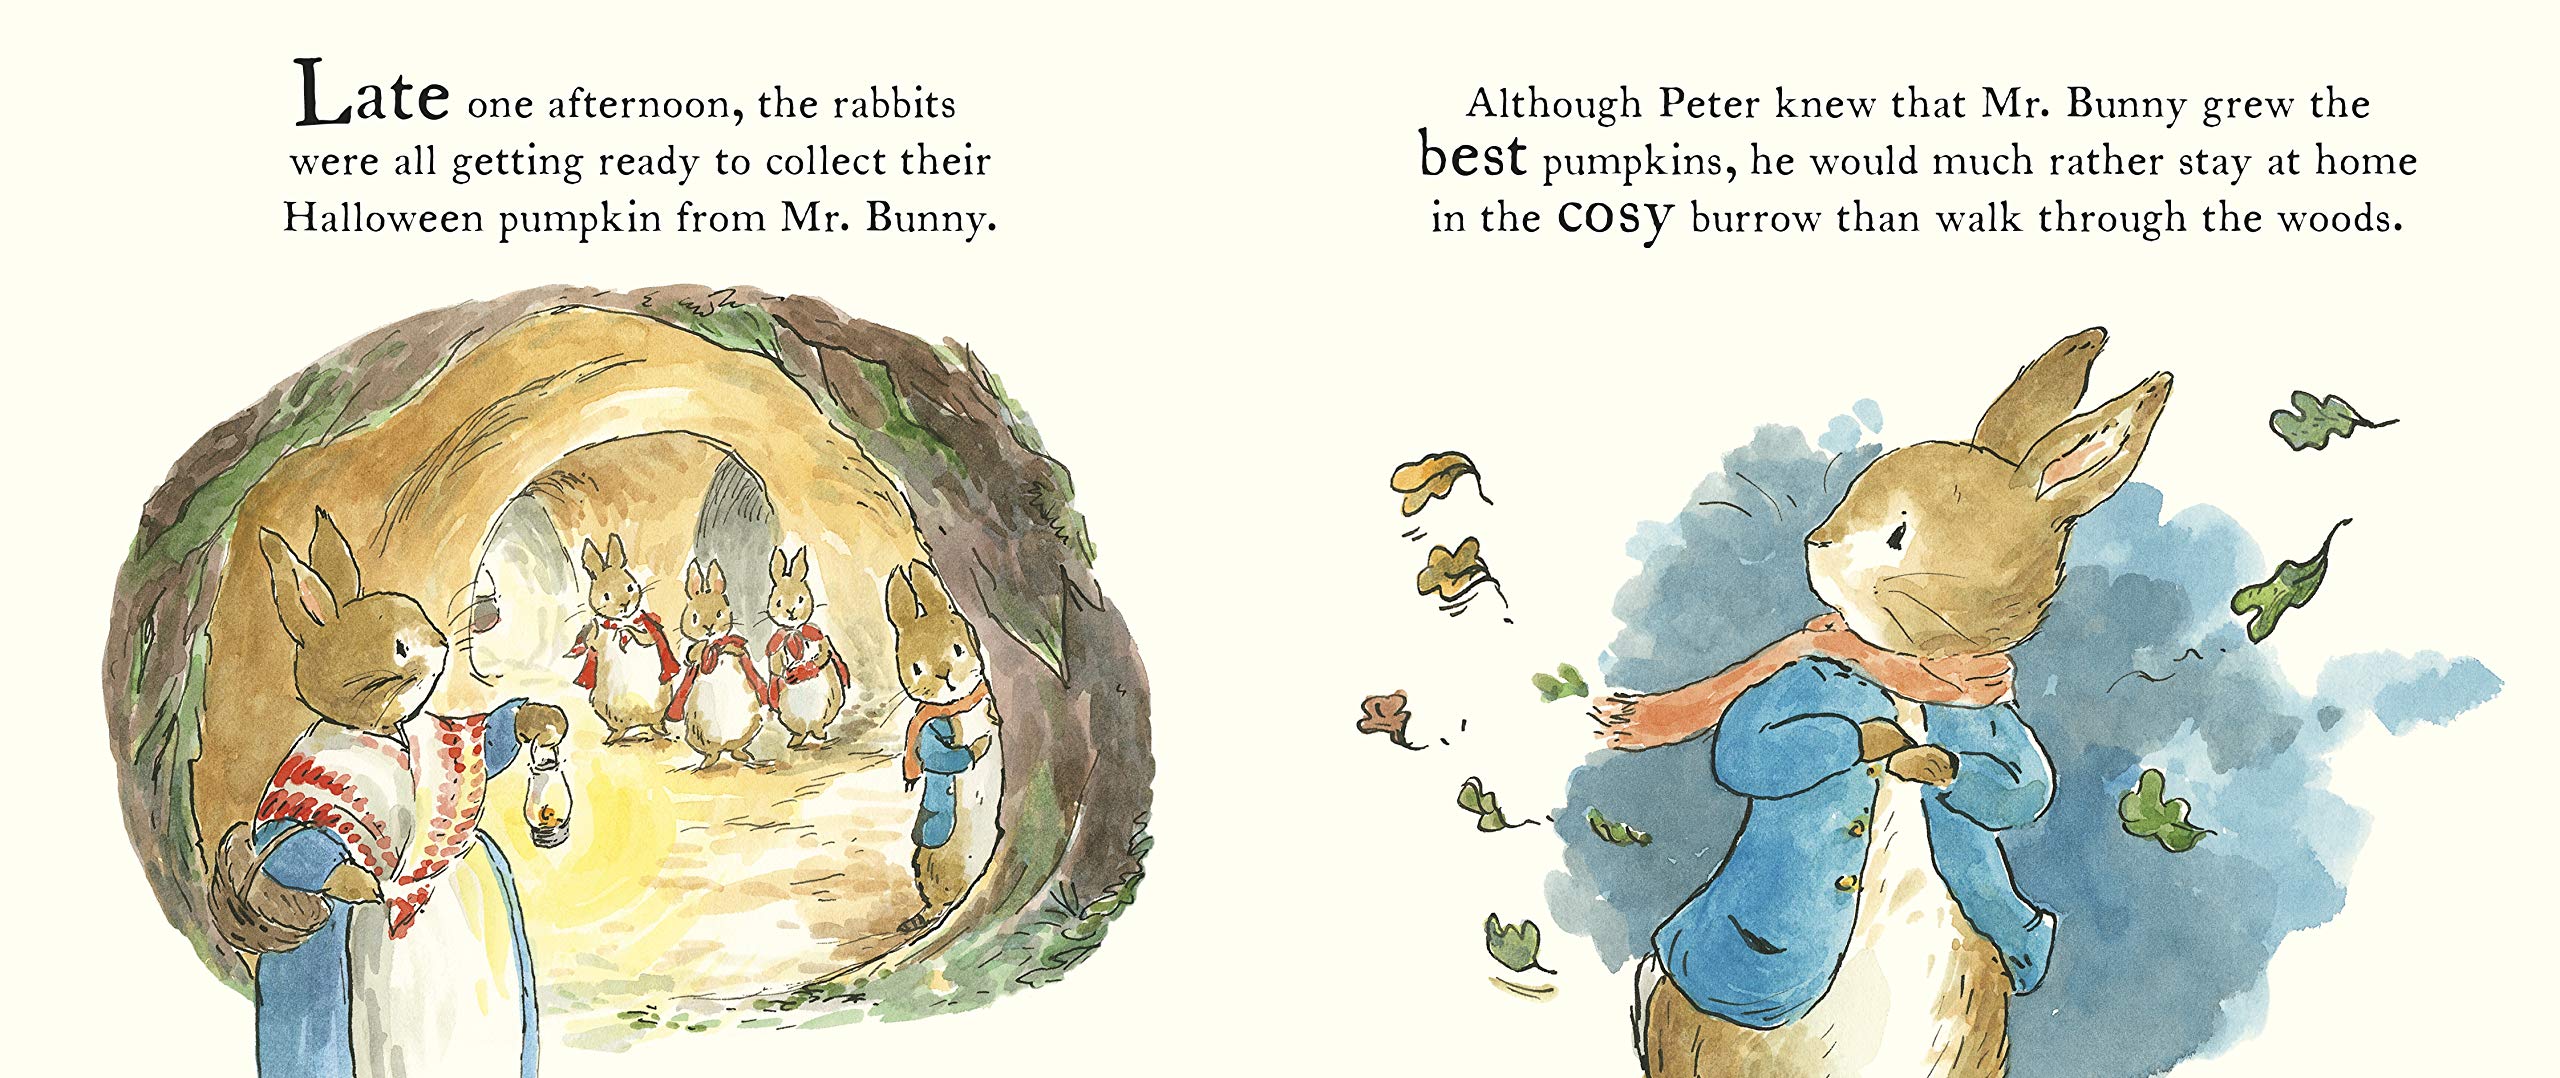 Peter Rabbit Tales - A Pumpkin for Peter